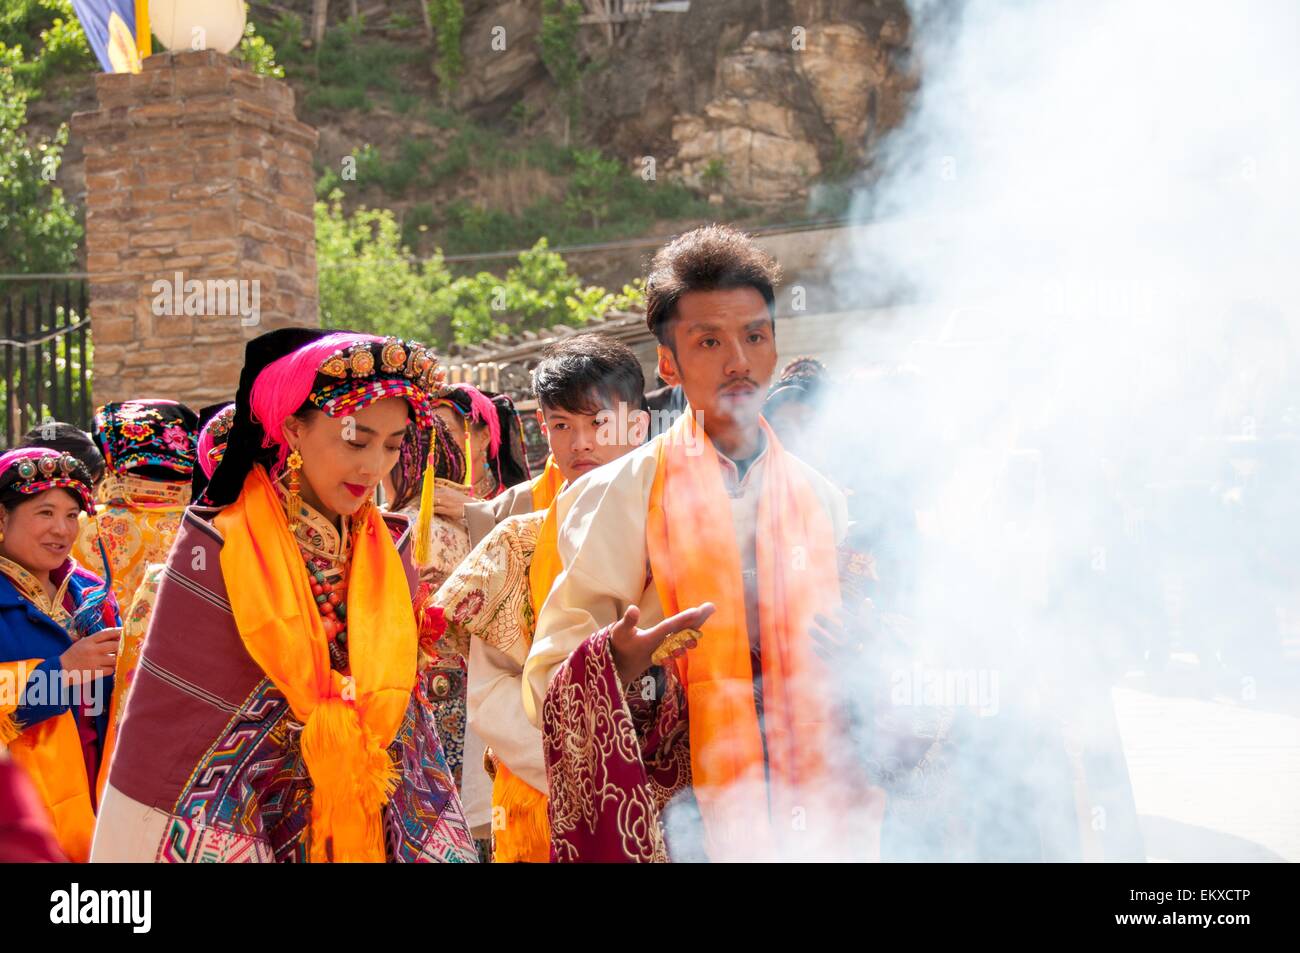 Dianba, cinese della provincia di Sichuan. Xi Apr, 2015. Dawa Zhoema (L) e Phuntsok (R) sono visibili presso la loro cerimonia di nozze nella contea di Dianba, a sud-ovest della Cina di provincia di Sichuan, Aprile 11, 2015. Dawa Zhoema e suo marito Phuntsok, entrambi i Tibetani nati negli anni ottanta, hanno tenuto la loro cerimonia di matrimonio in un modo tradizionale di sabato scorso. La cerimonia di nozze ha attirato un sacco di attenzione come alcuni di loro le foto di moda erano largamente apprezzato e condiviso su varie reti sociali recentemente in Cina. © Wang Di/Xinhua/Alamy Live News Foto Stock